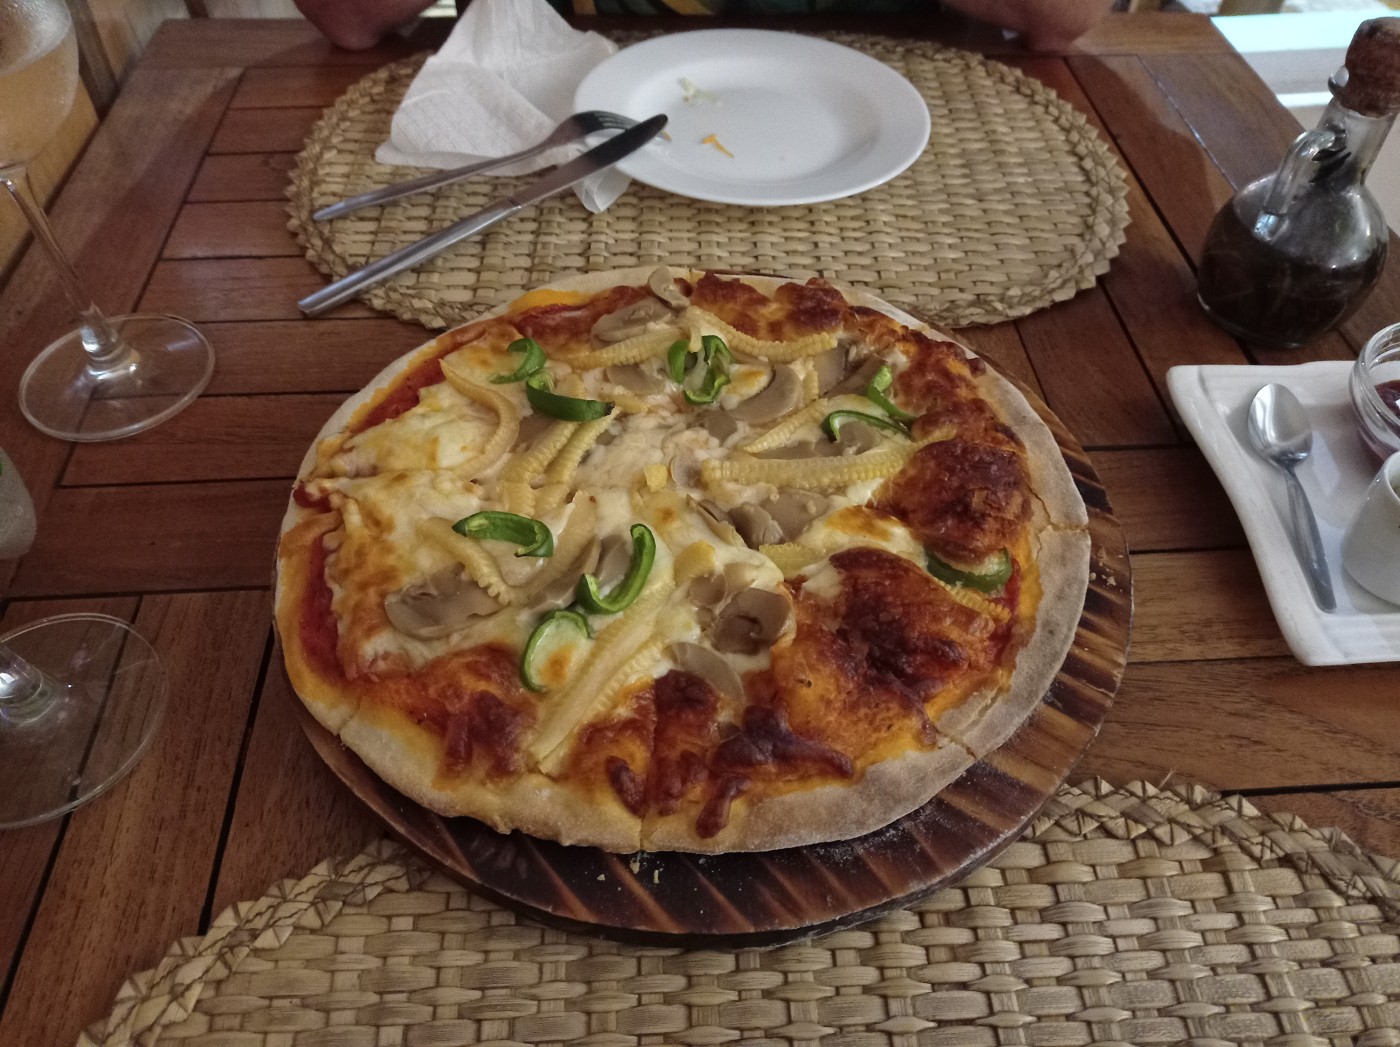 Le marlin bleu vegetarian pizza